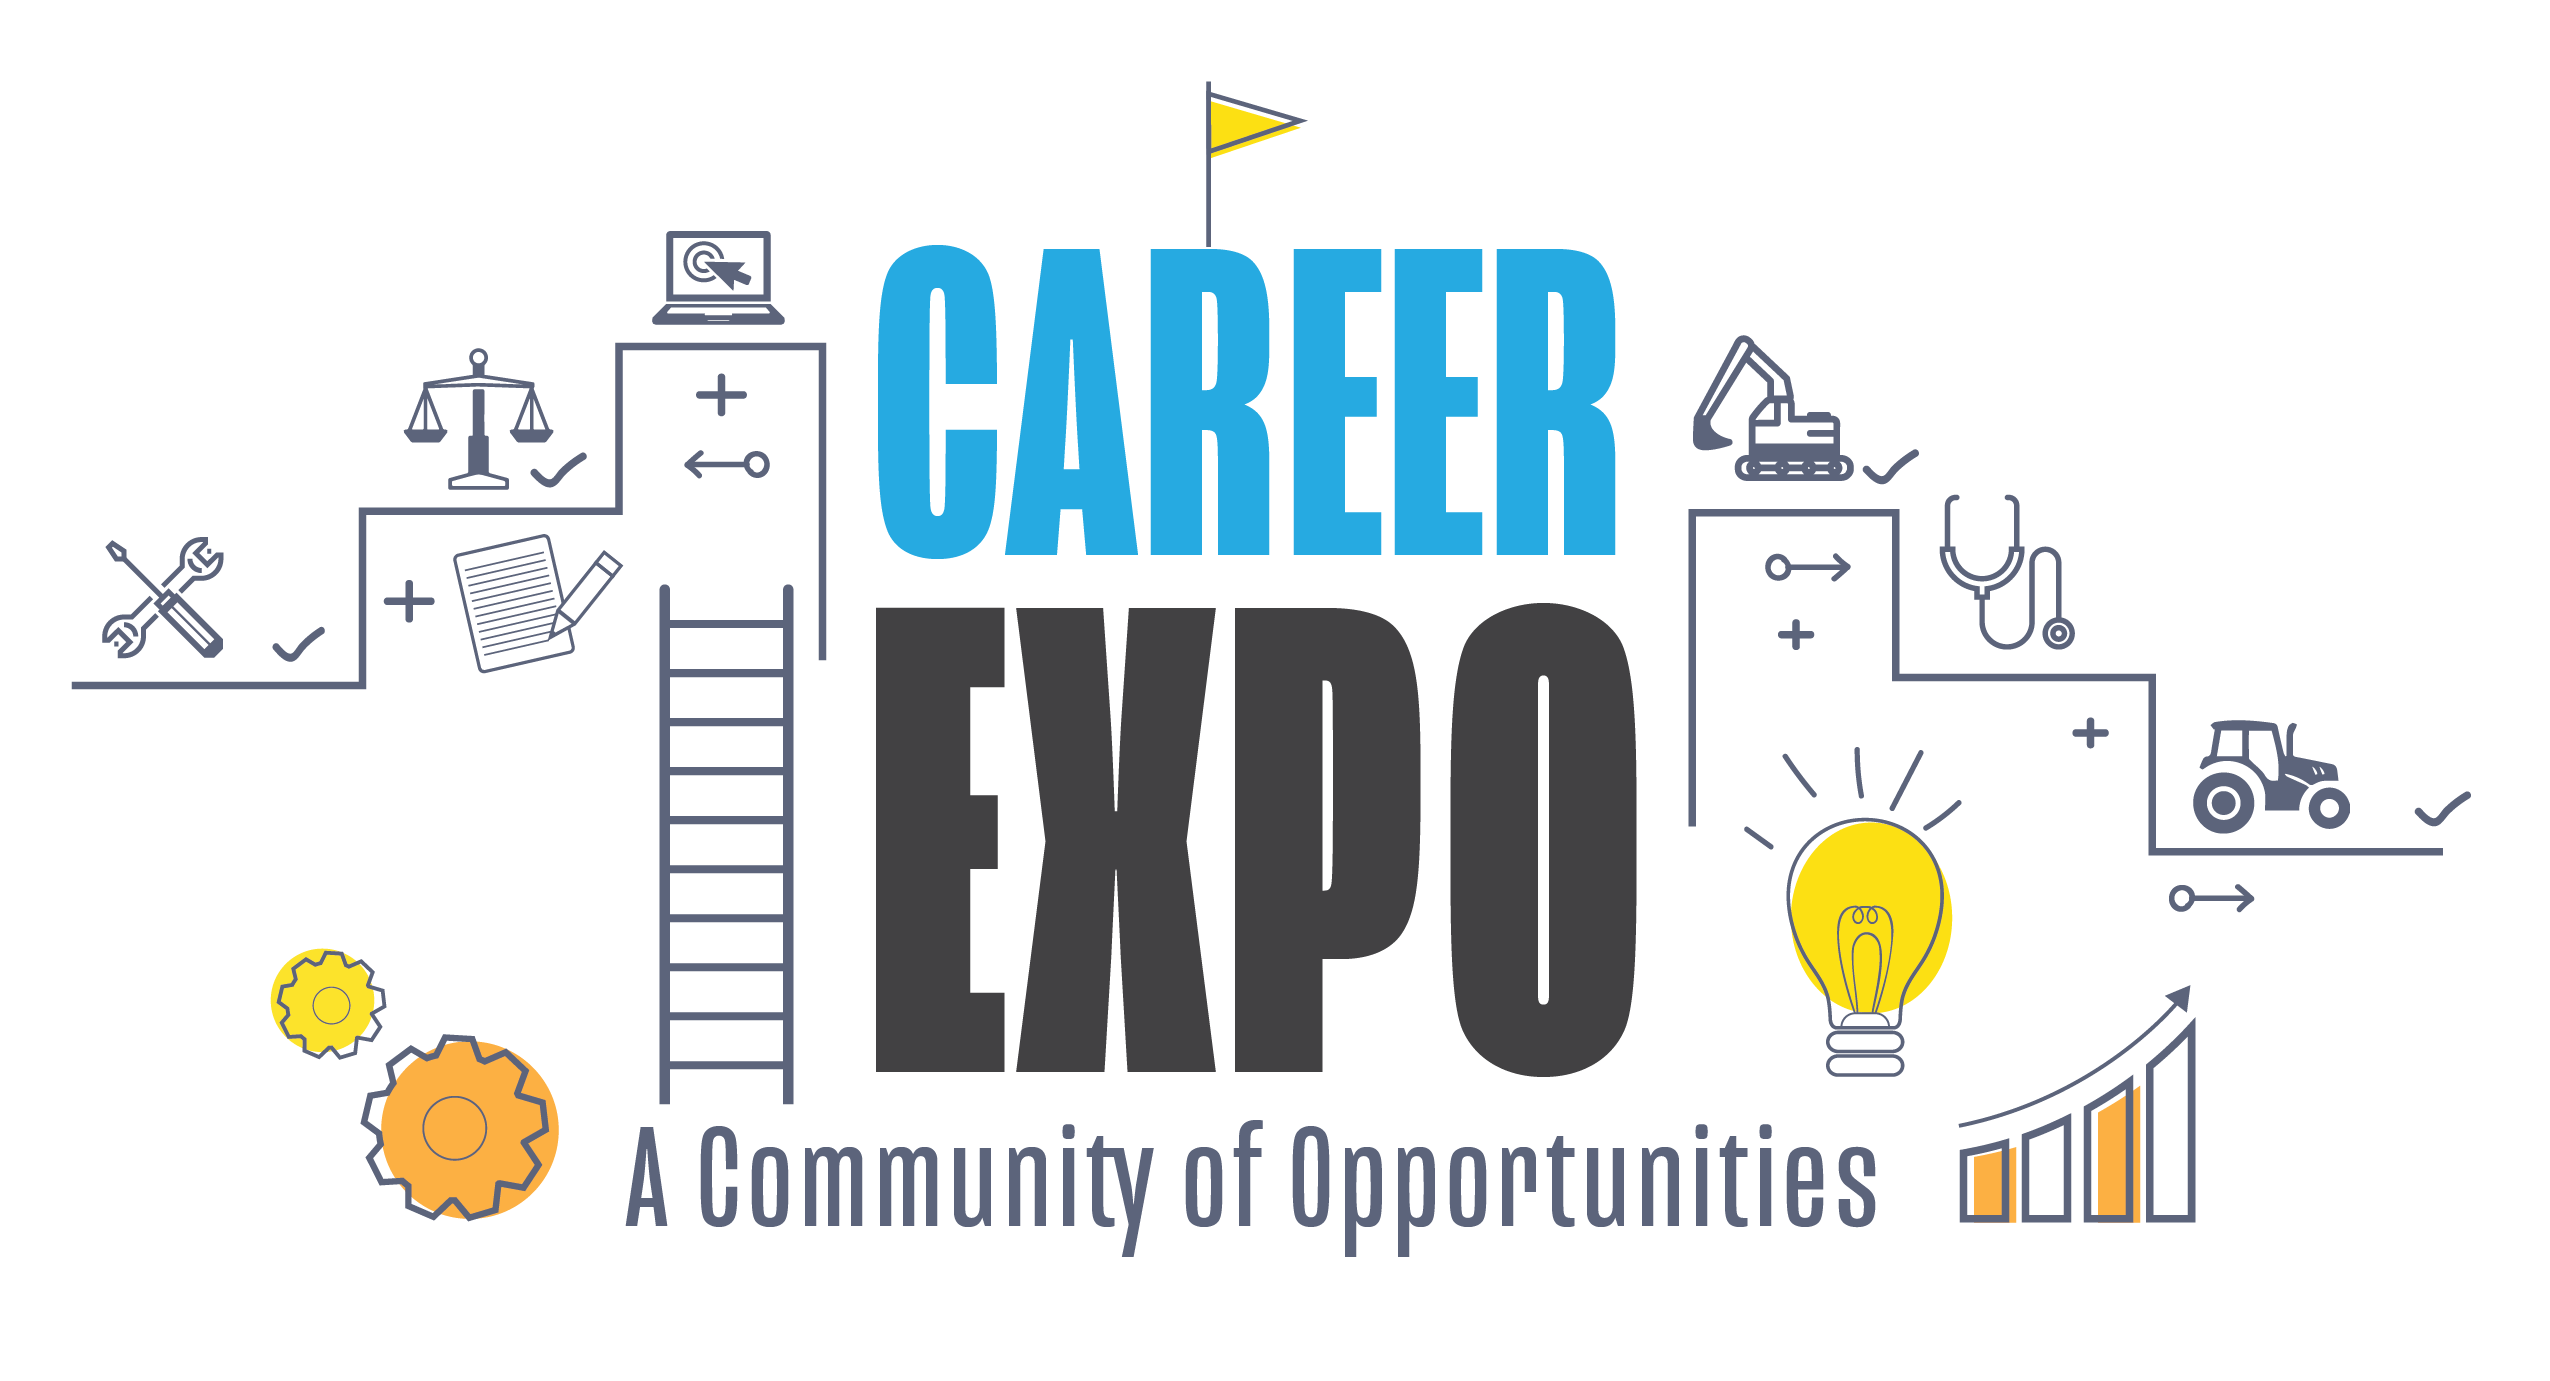 Mankato Career Expo Logo